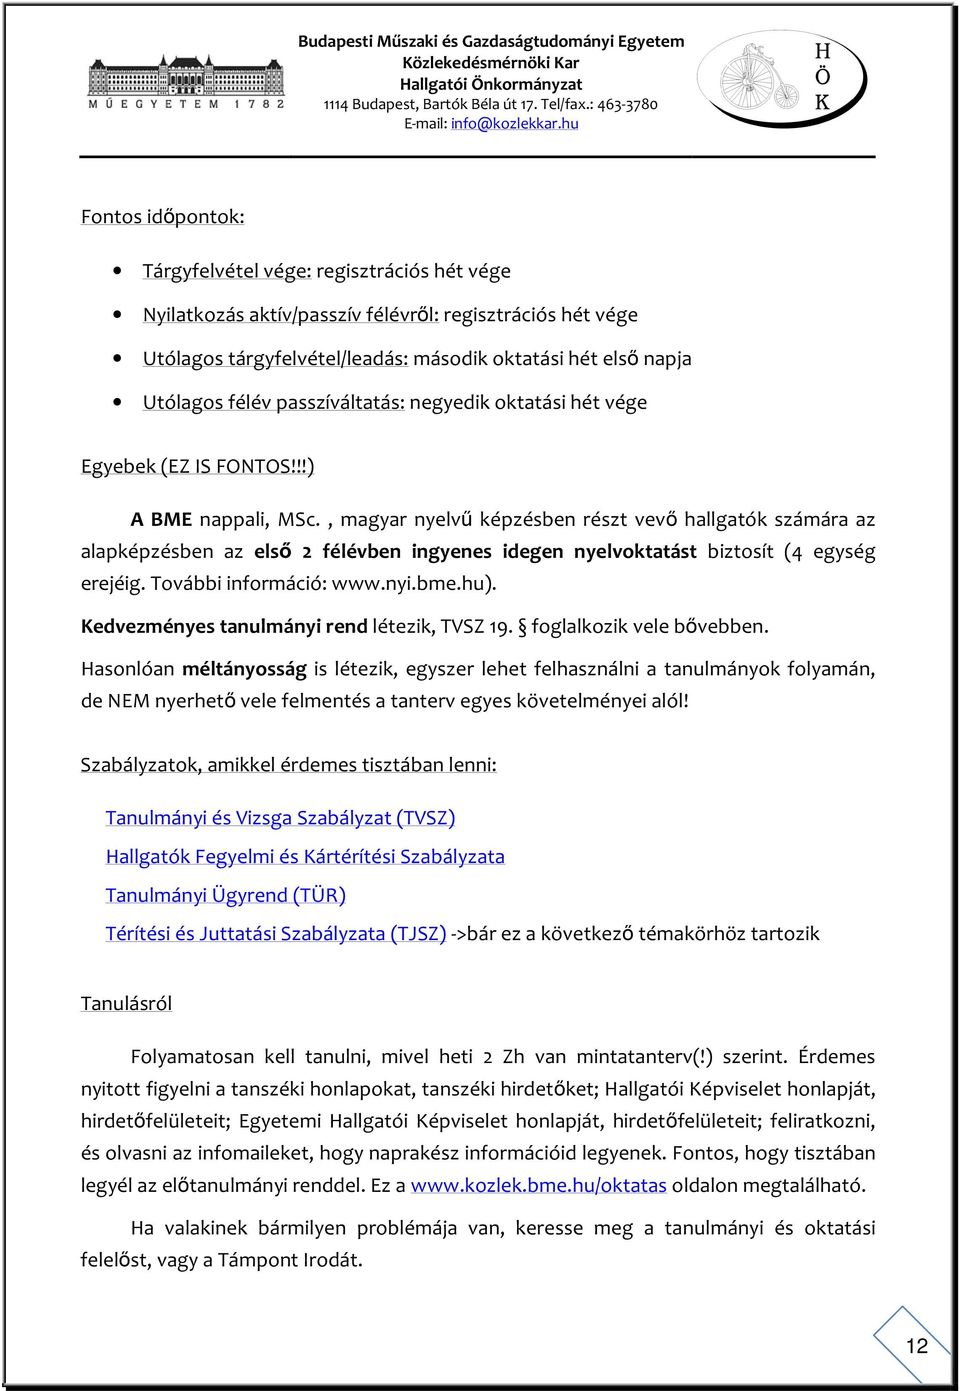 , magyar nyelvű képzésben részt vevő hallgatók számára az alapképzésben az első 2 félévben ingyenes idegen nyelvoktatást biztosít (4 egység erejéig. További információ: www.nyi.bme.hu).